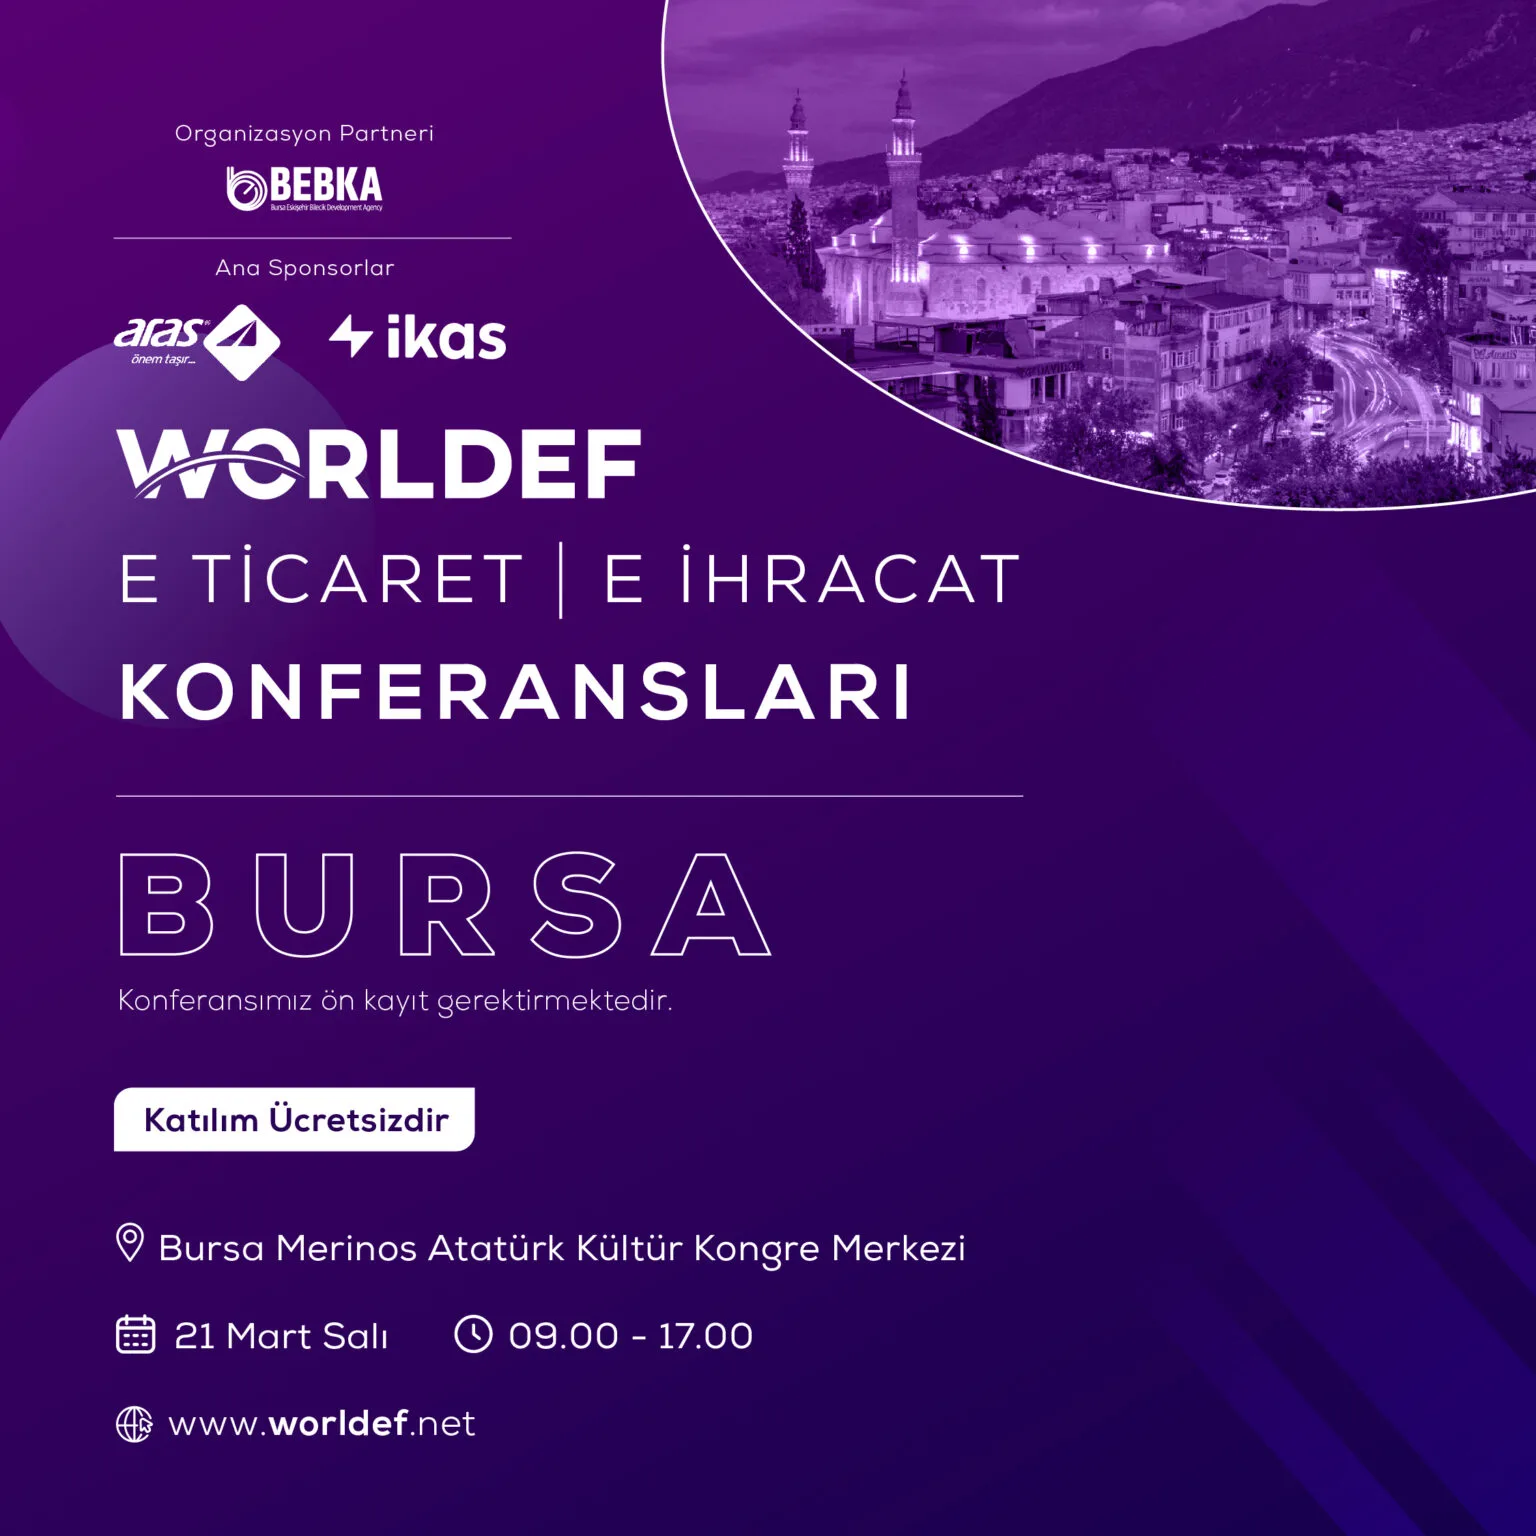  Türkiye'nin En Büyük Dördüncü Kenti Bursa’da E-ticaret ve E-ihracat Buluşması!